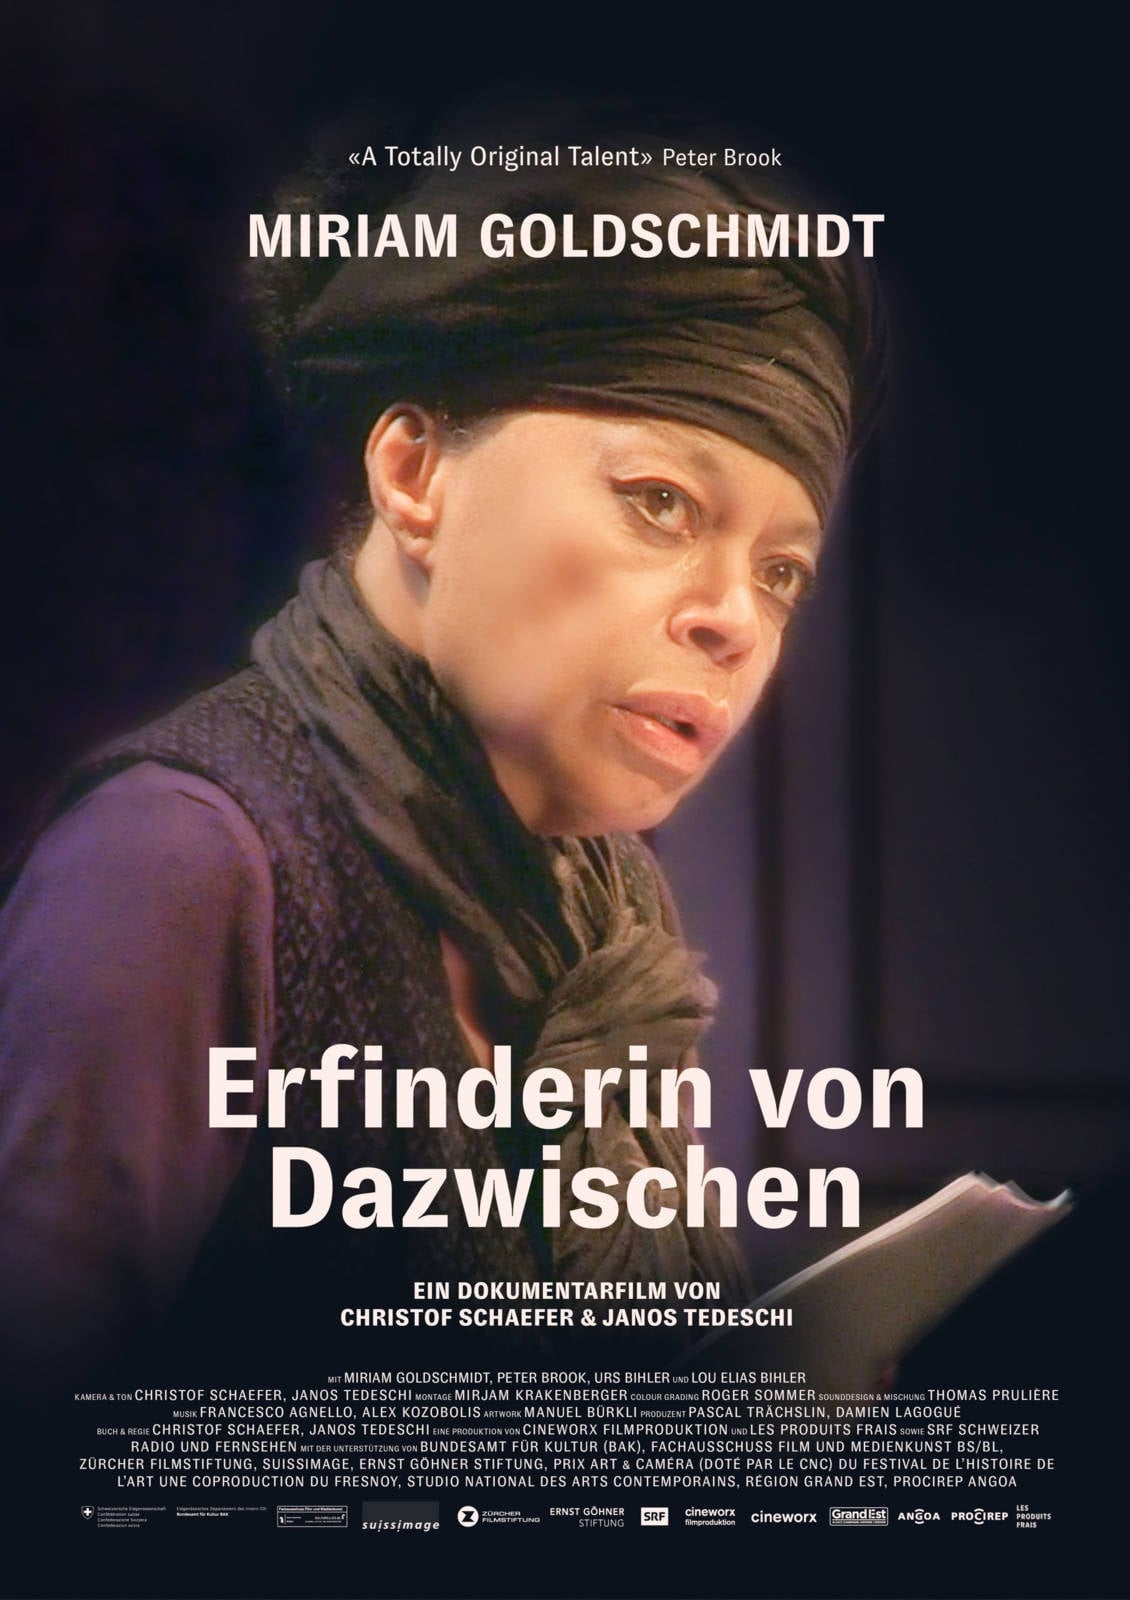 Miriam Goldschmidt – Creator of the In-between